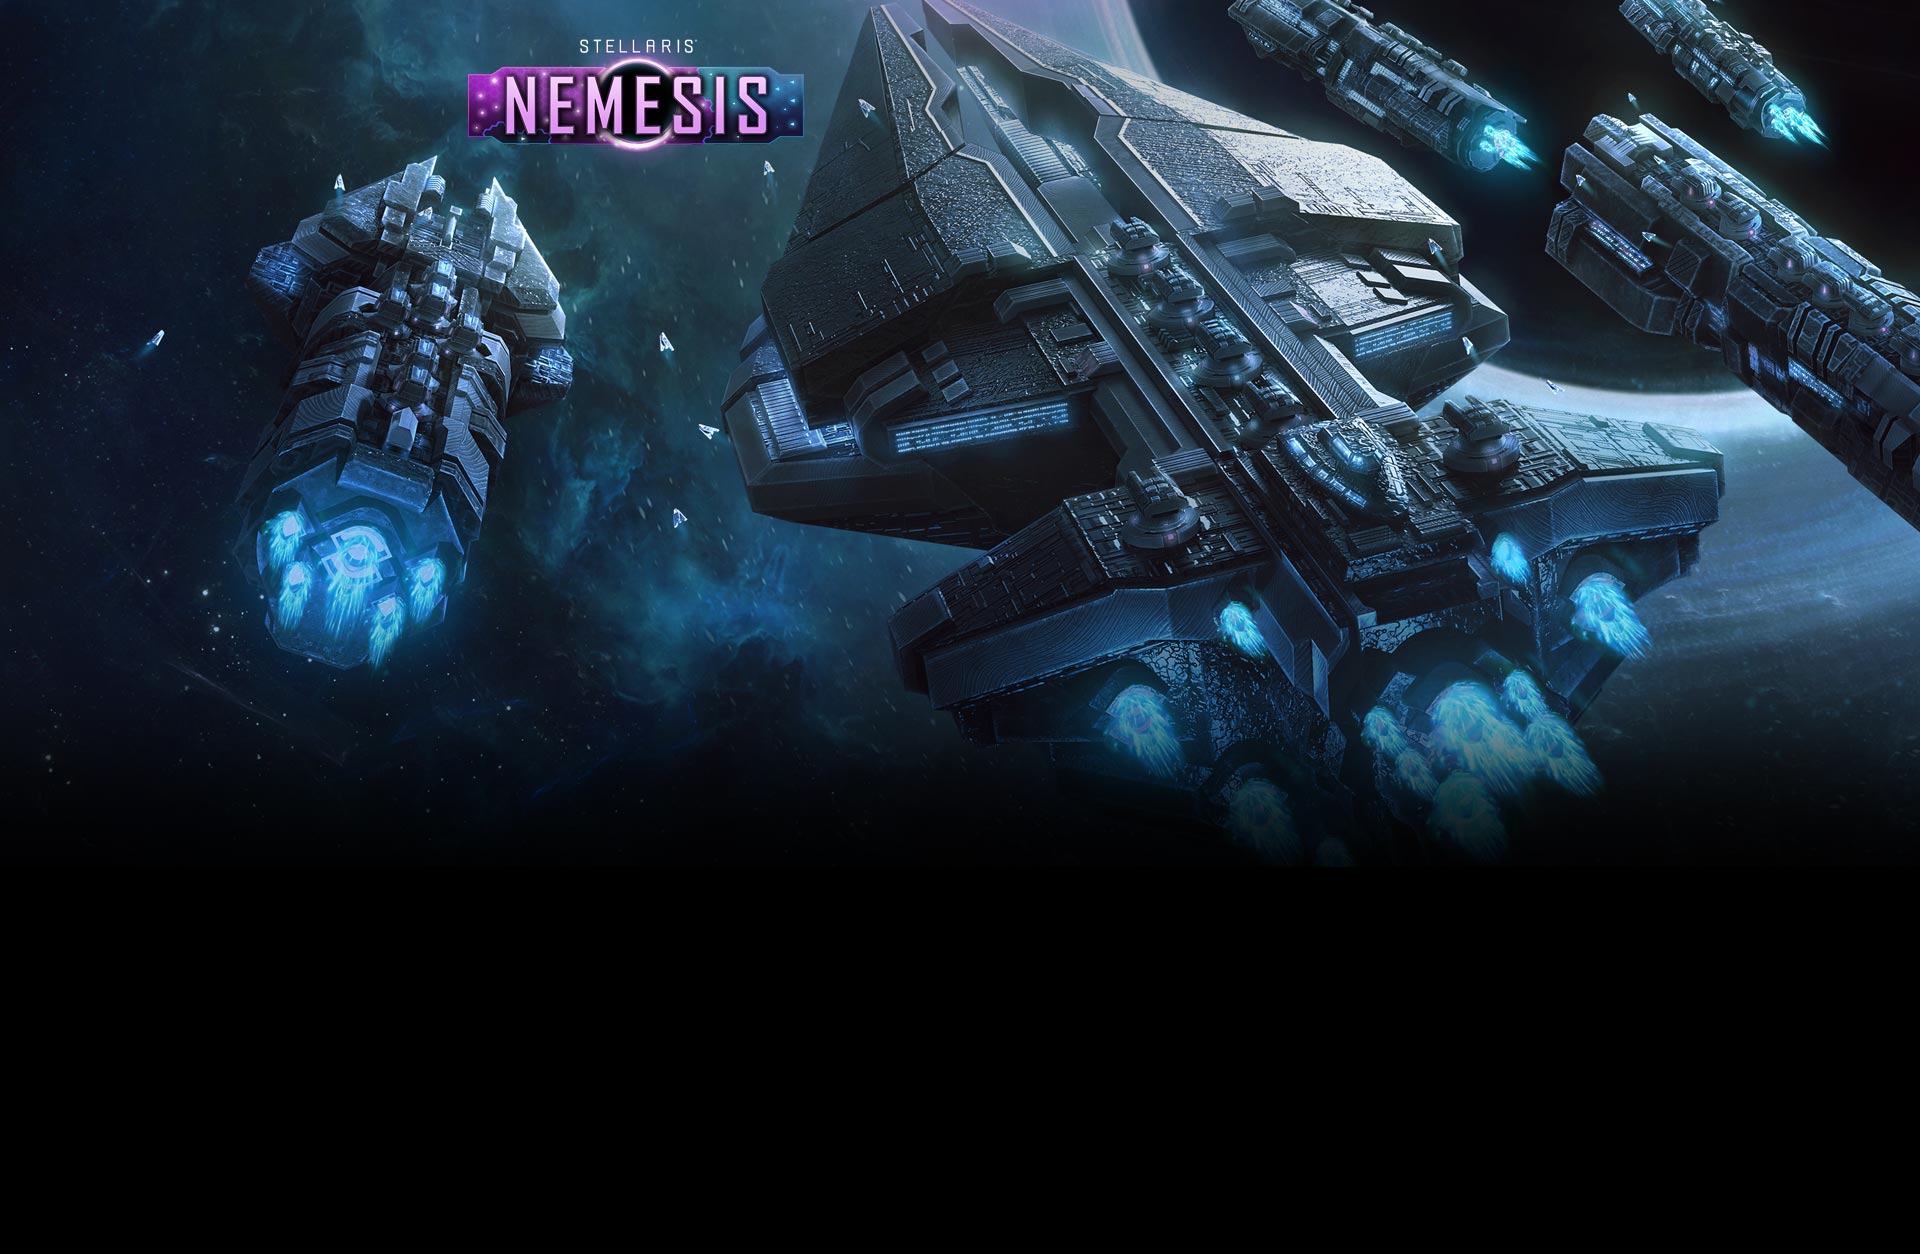 Stellaris: Nemesis